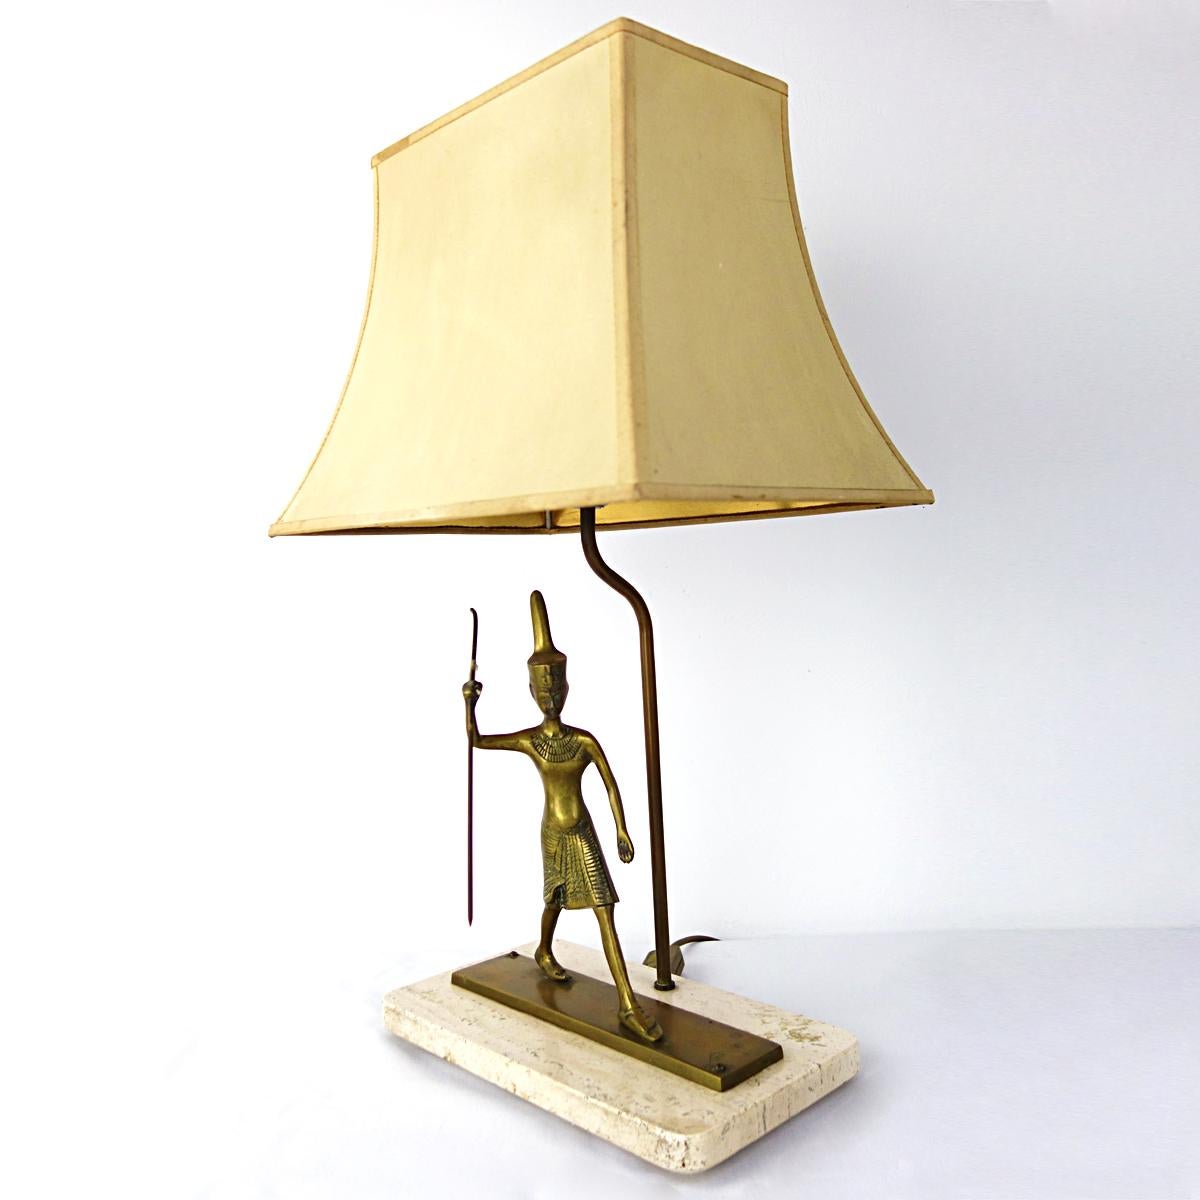 Sehr seltene Tischlampe mit einem schreitenden ägyptischen Krieger aus Messing auf einem Marmorsockel. Der Schirm, der auf der Innenseite goldfarben ist, sorgt für ein warmes Licht. Eine echte Persönlichkeit.